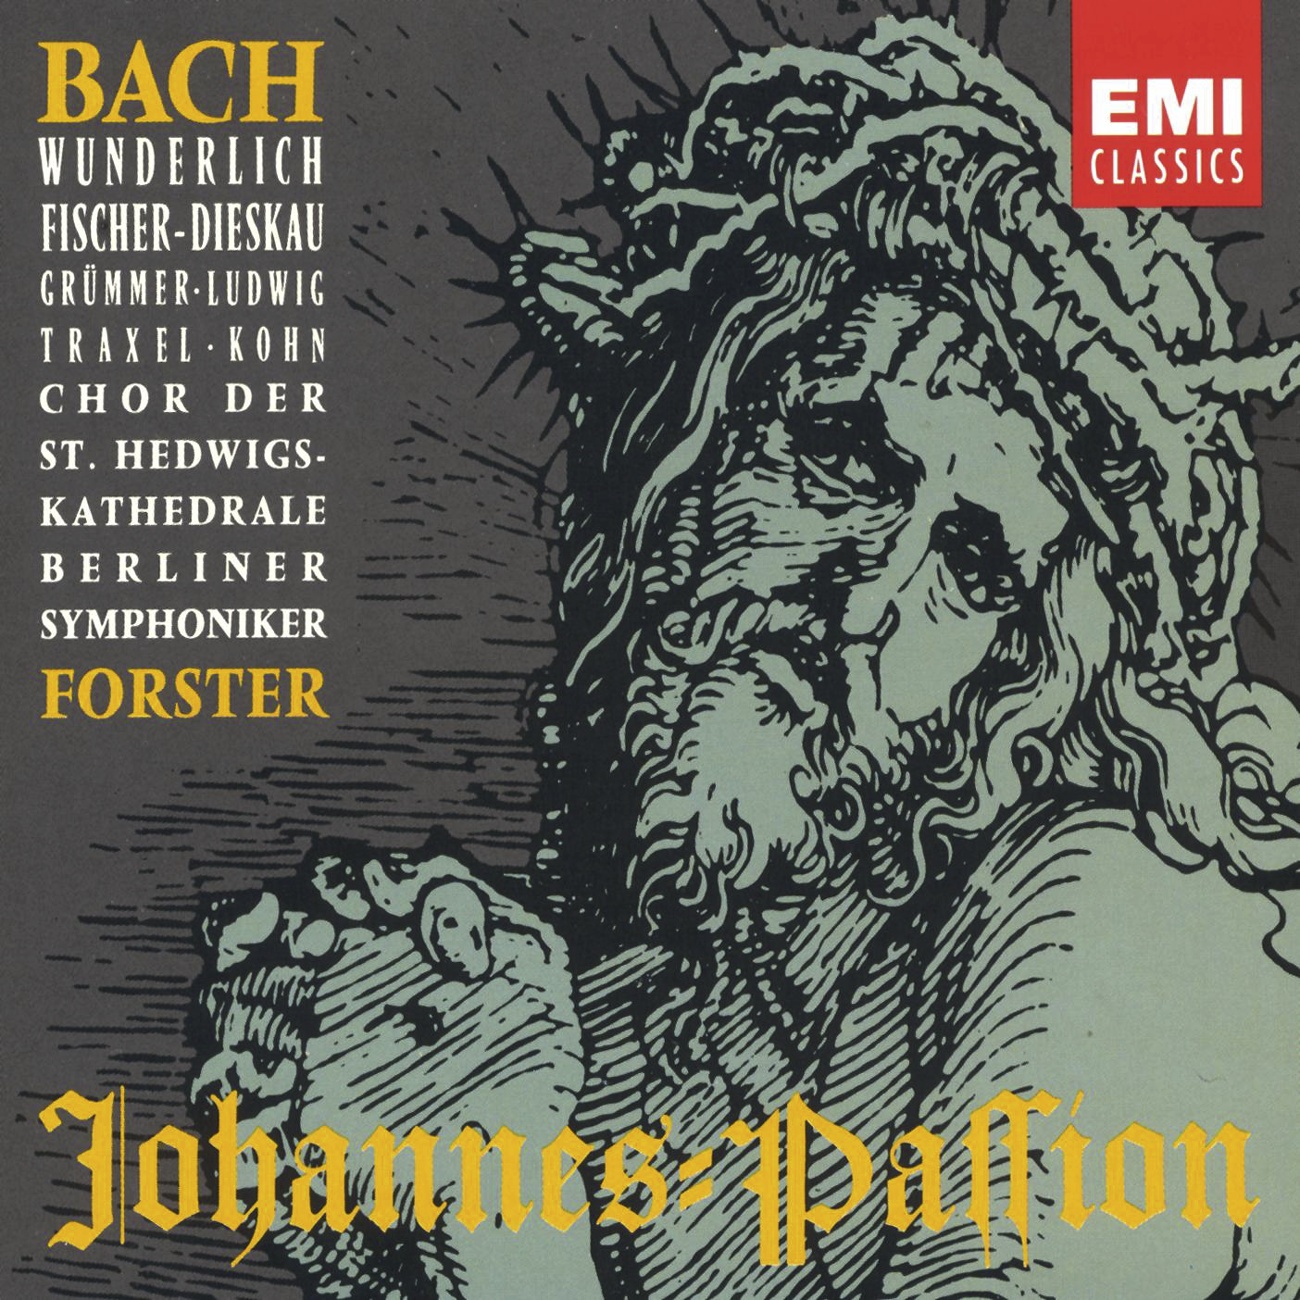 St. John Passion BWV 245 (Johannes-Passion), Second Part: Nicht diesen, sondern Barrabam! (Nr.29: Chor)